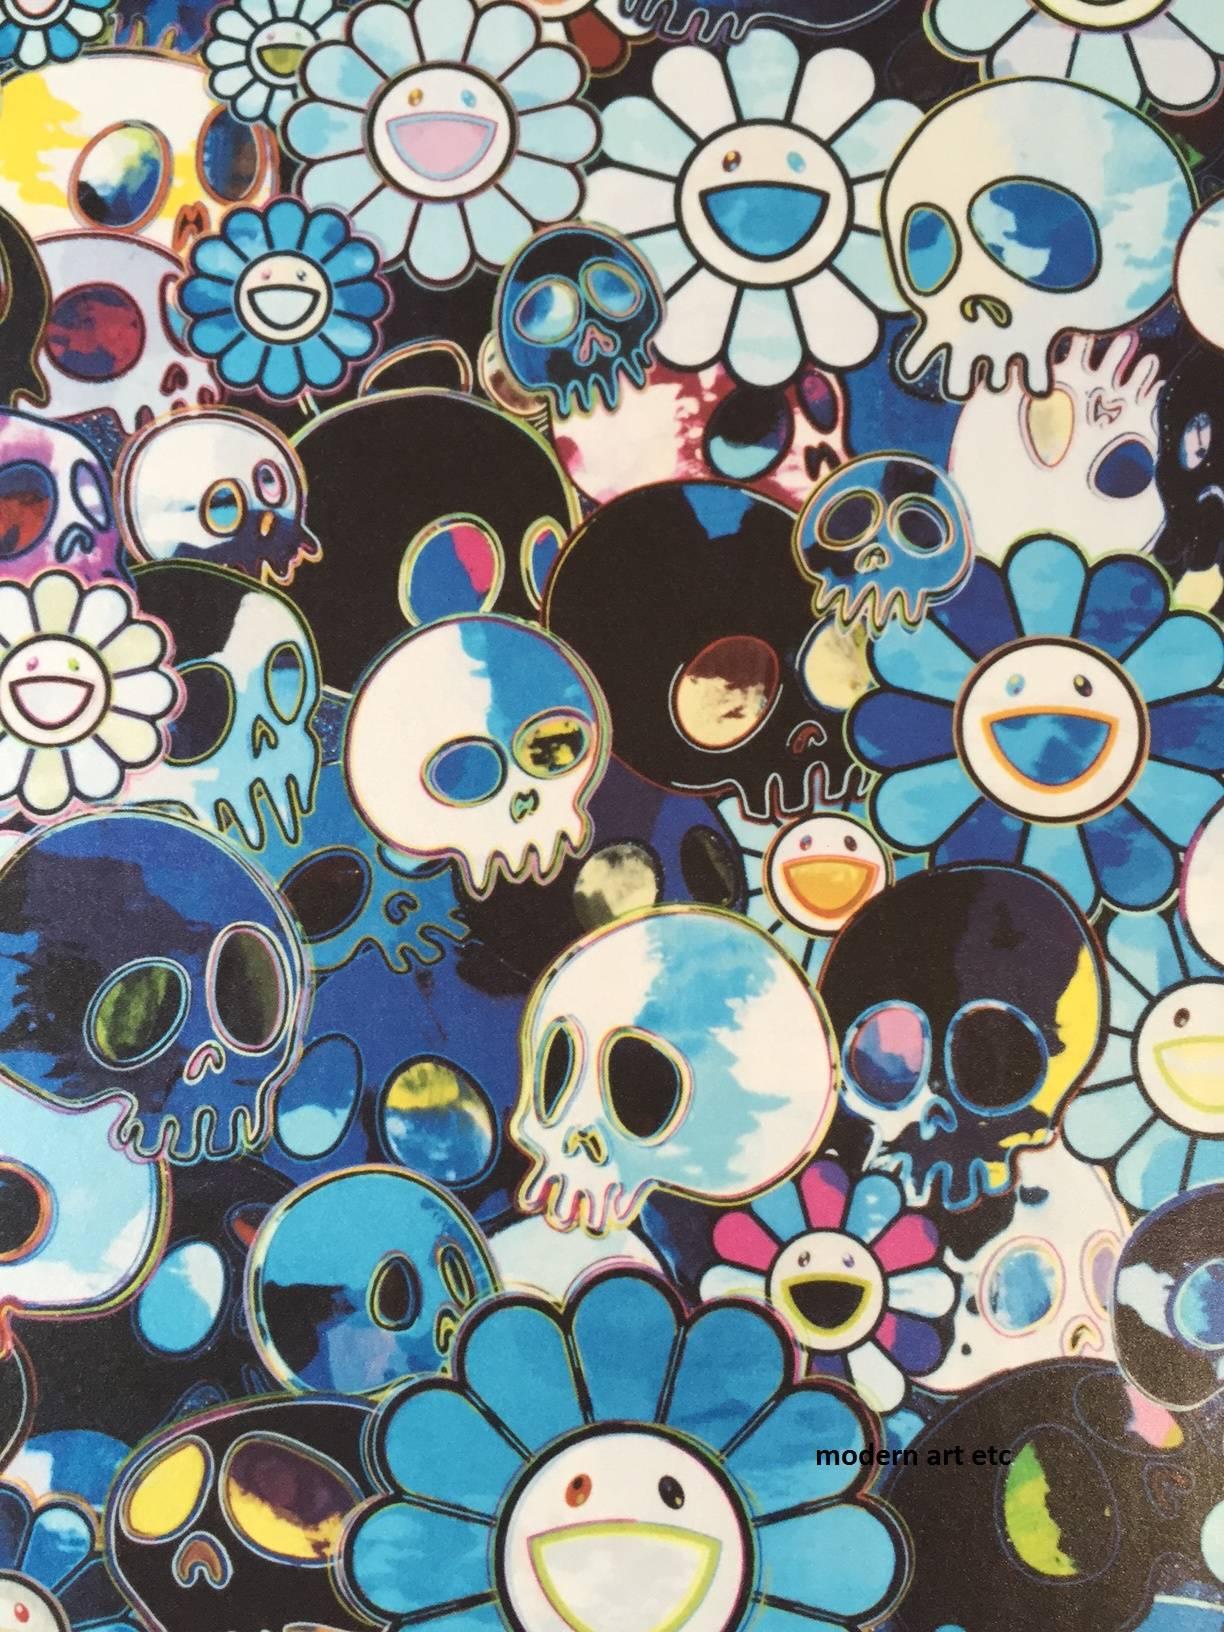 takashi murakami blue flowers and skulls